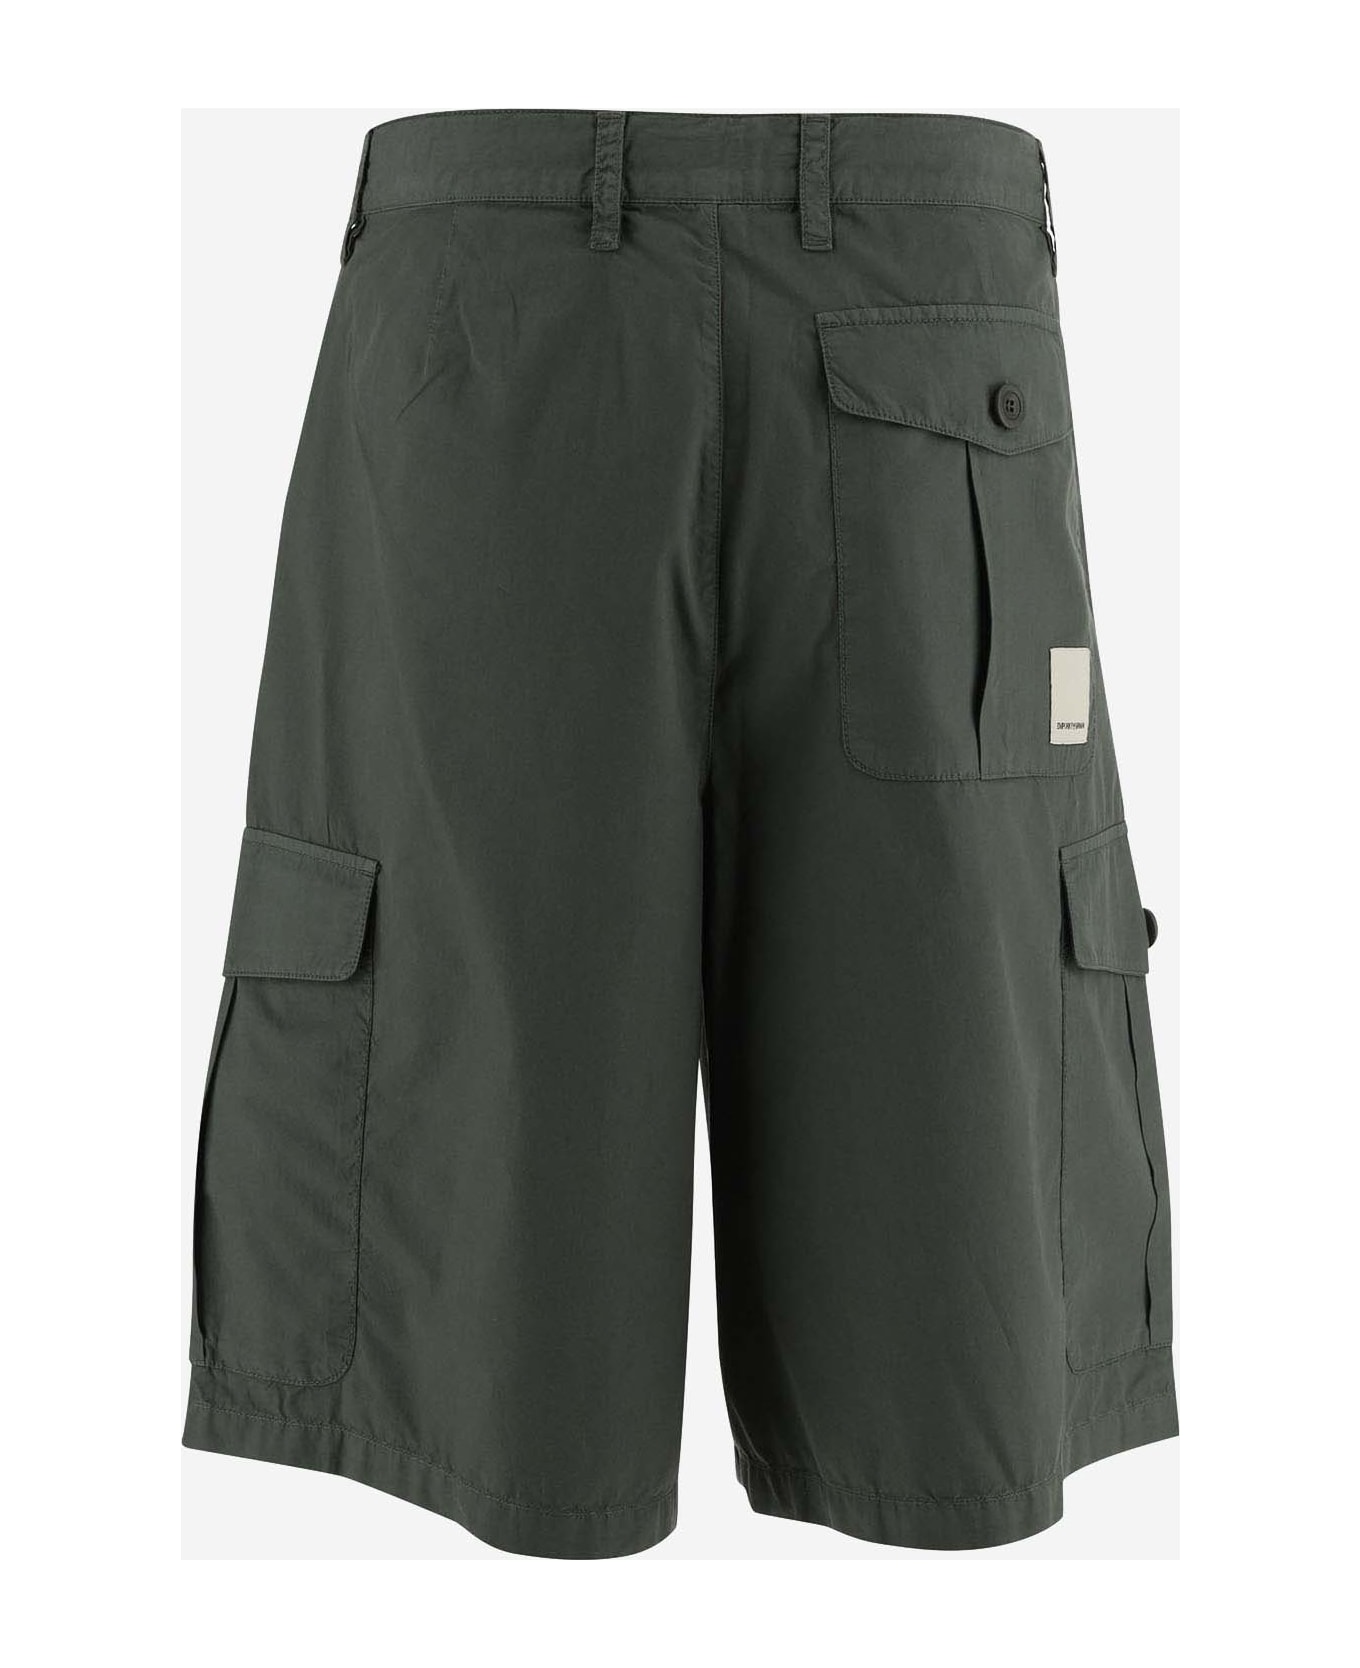 Emporio Armani Cotton Bermuda Shorts - Military